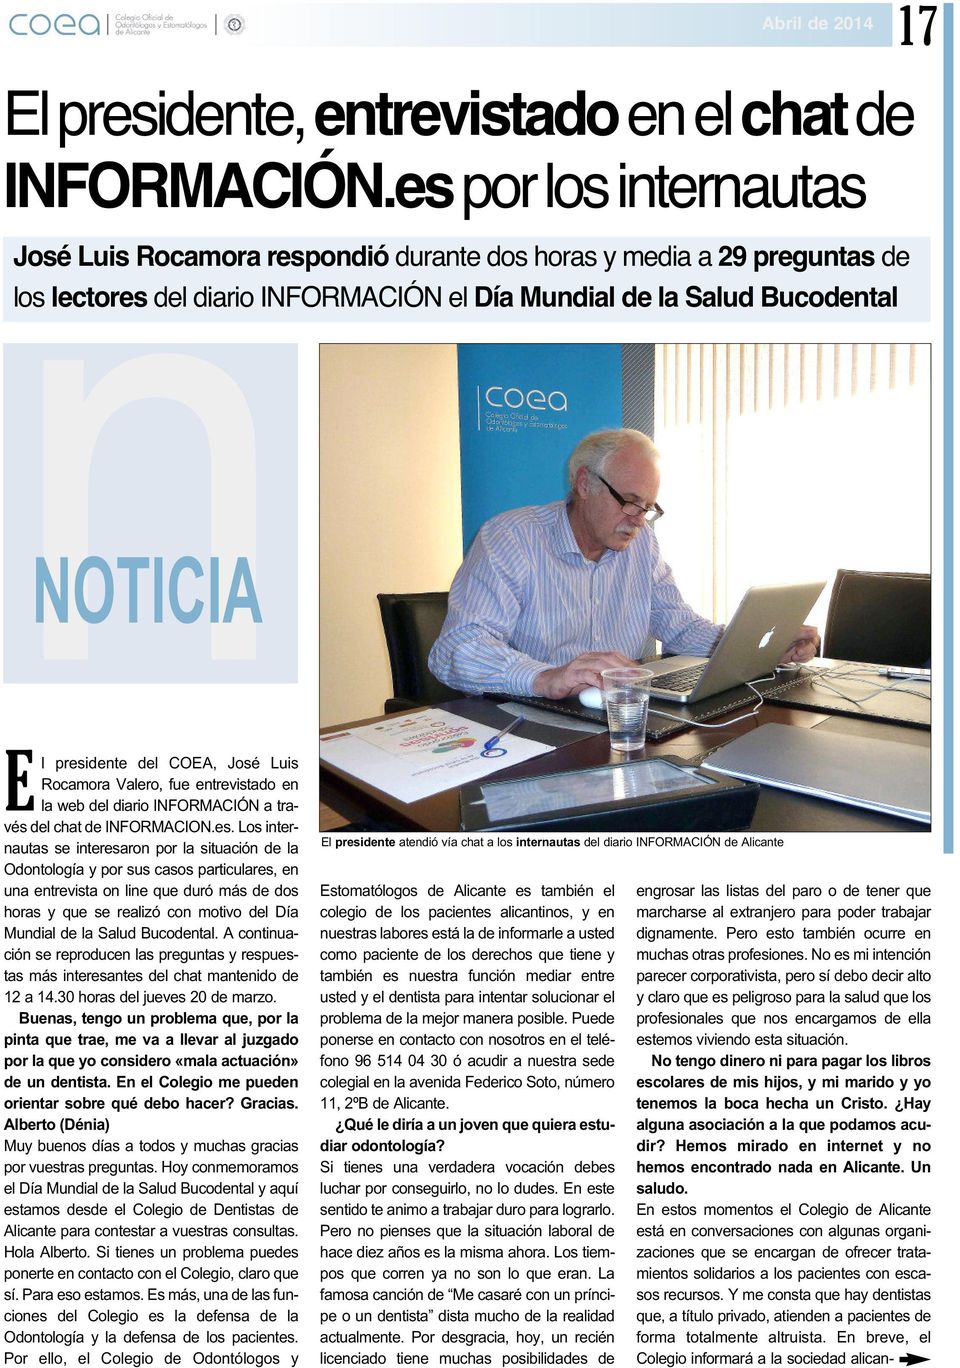 COEA, José Luis Rocamora Valero, fue entrevistado en la web del diario INFORMACIÓN a través del chat de INFORMACION.es.